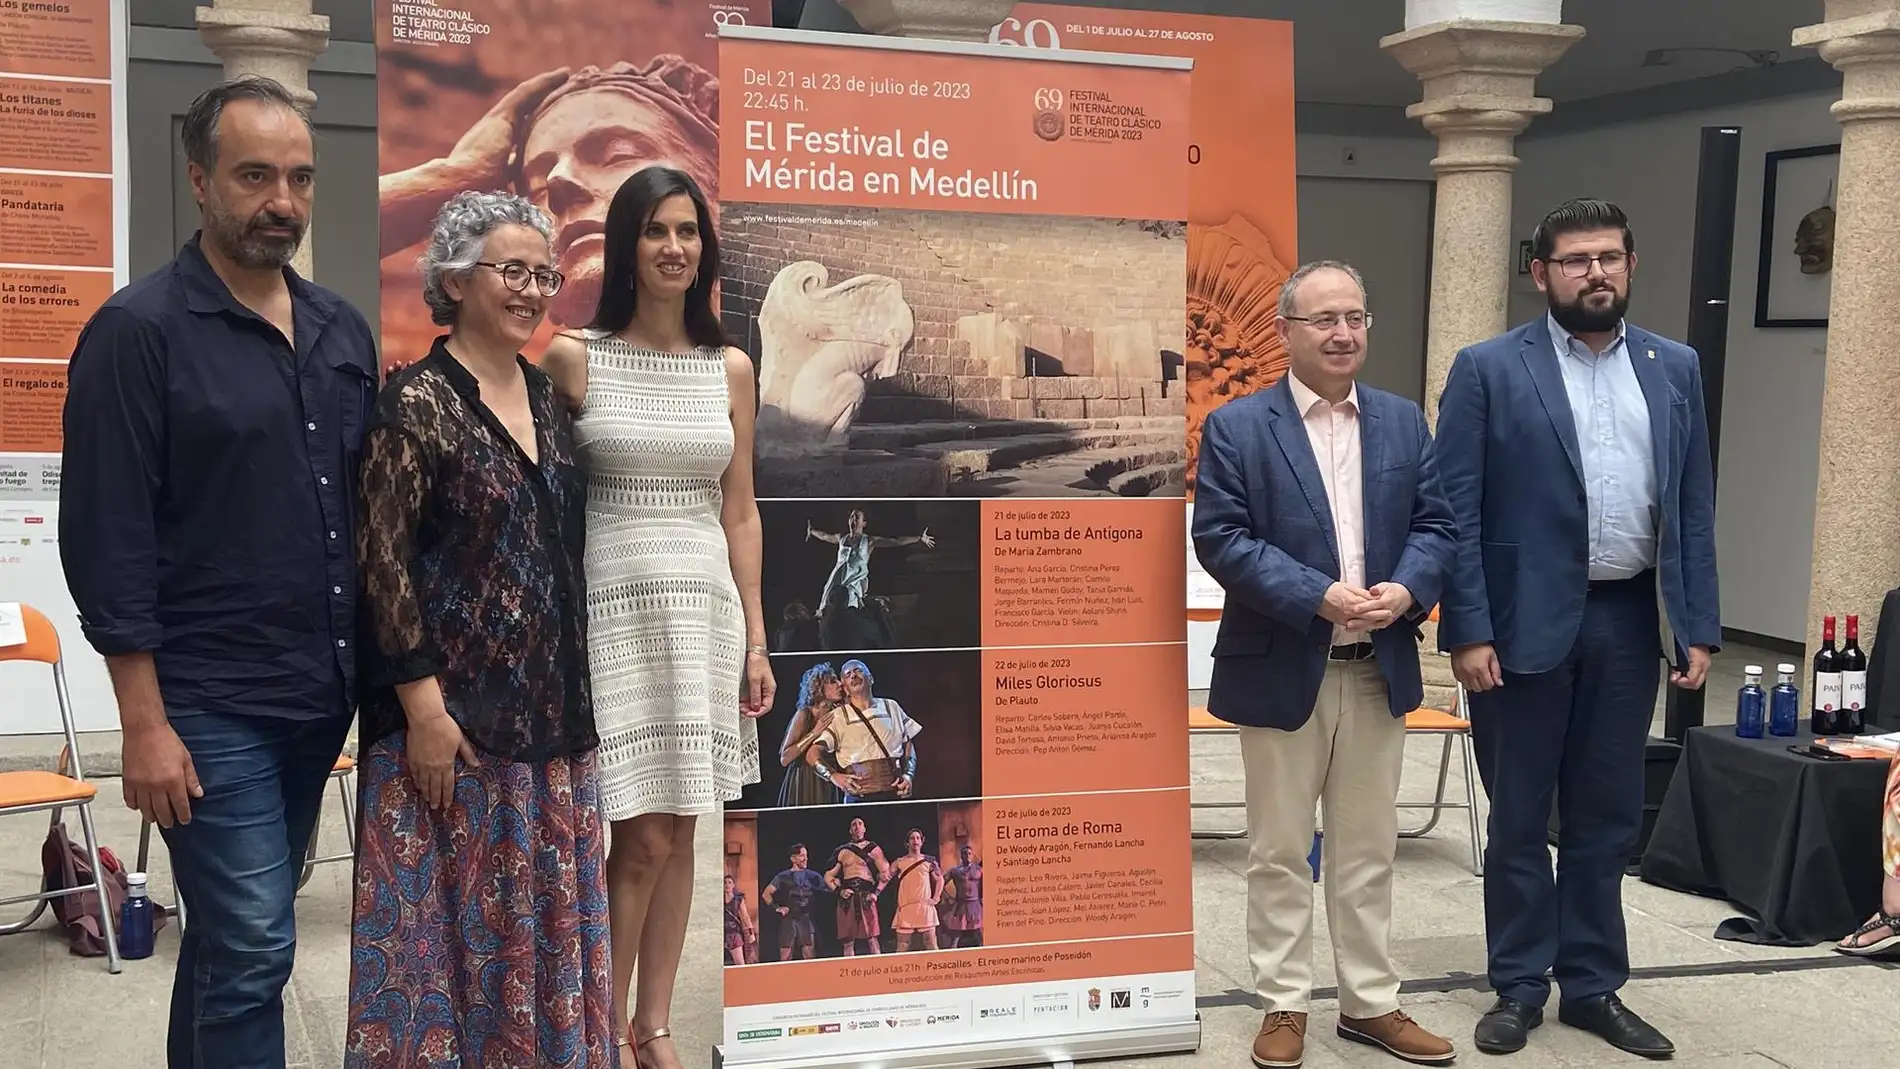 El Festival de Mérida lleva a Medellín un espectáculo de danza y teatro, una comedia y un musical del 21 al 23 de julio